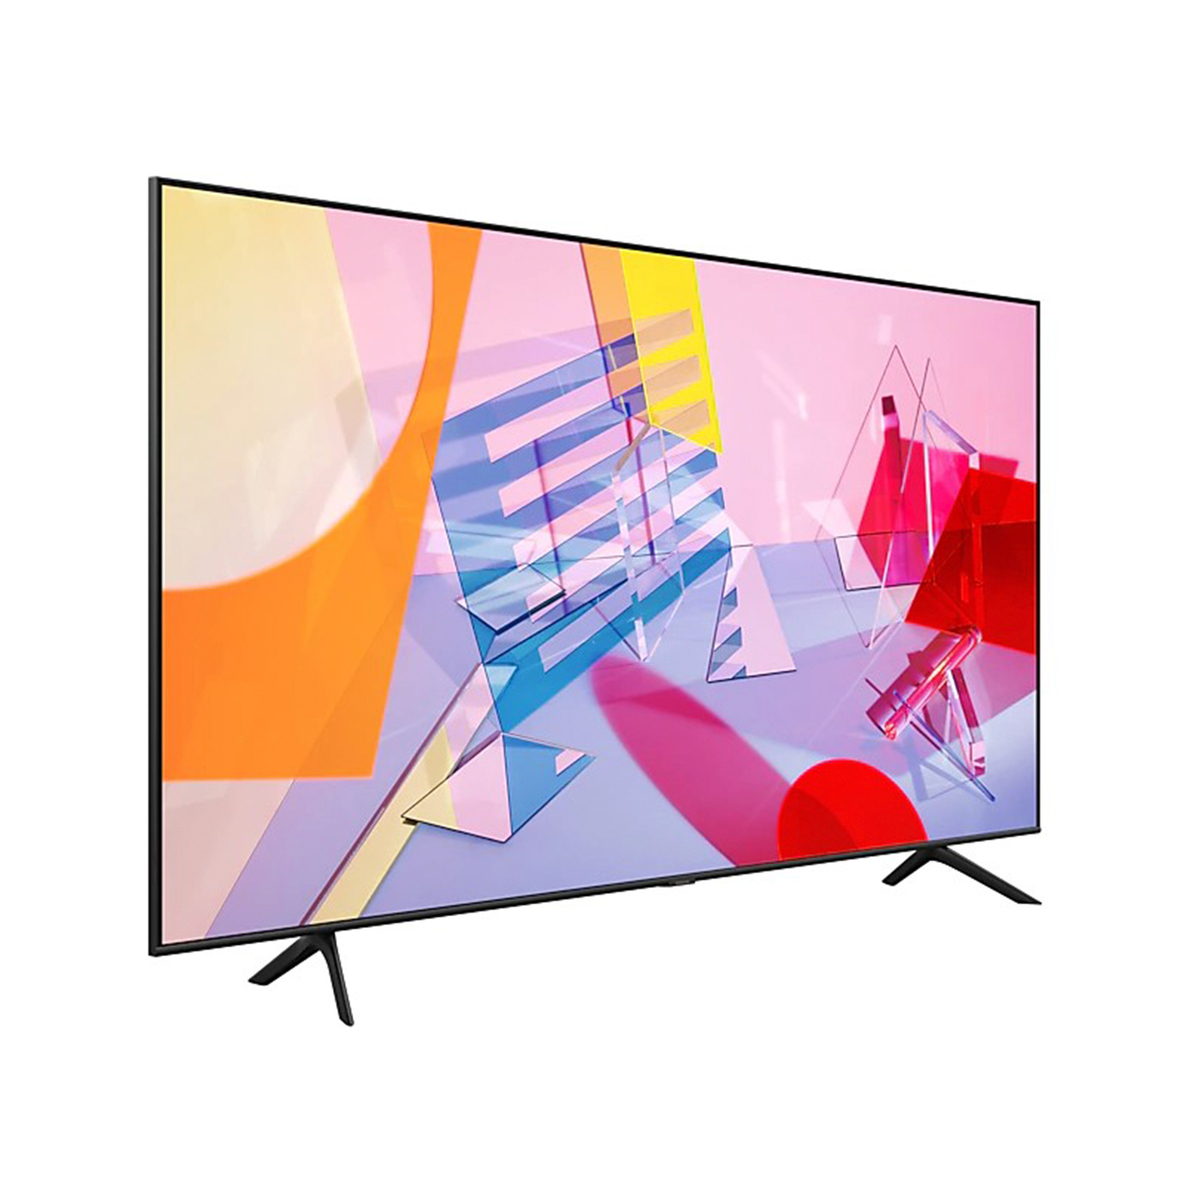 Samsung QLED 4K Flat Smart TV QA65Q60TAUXQR 65" (2020)